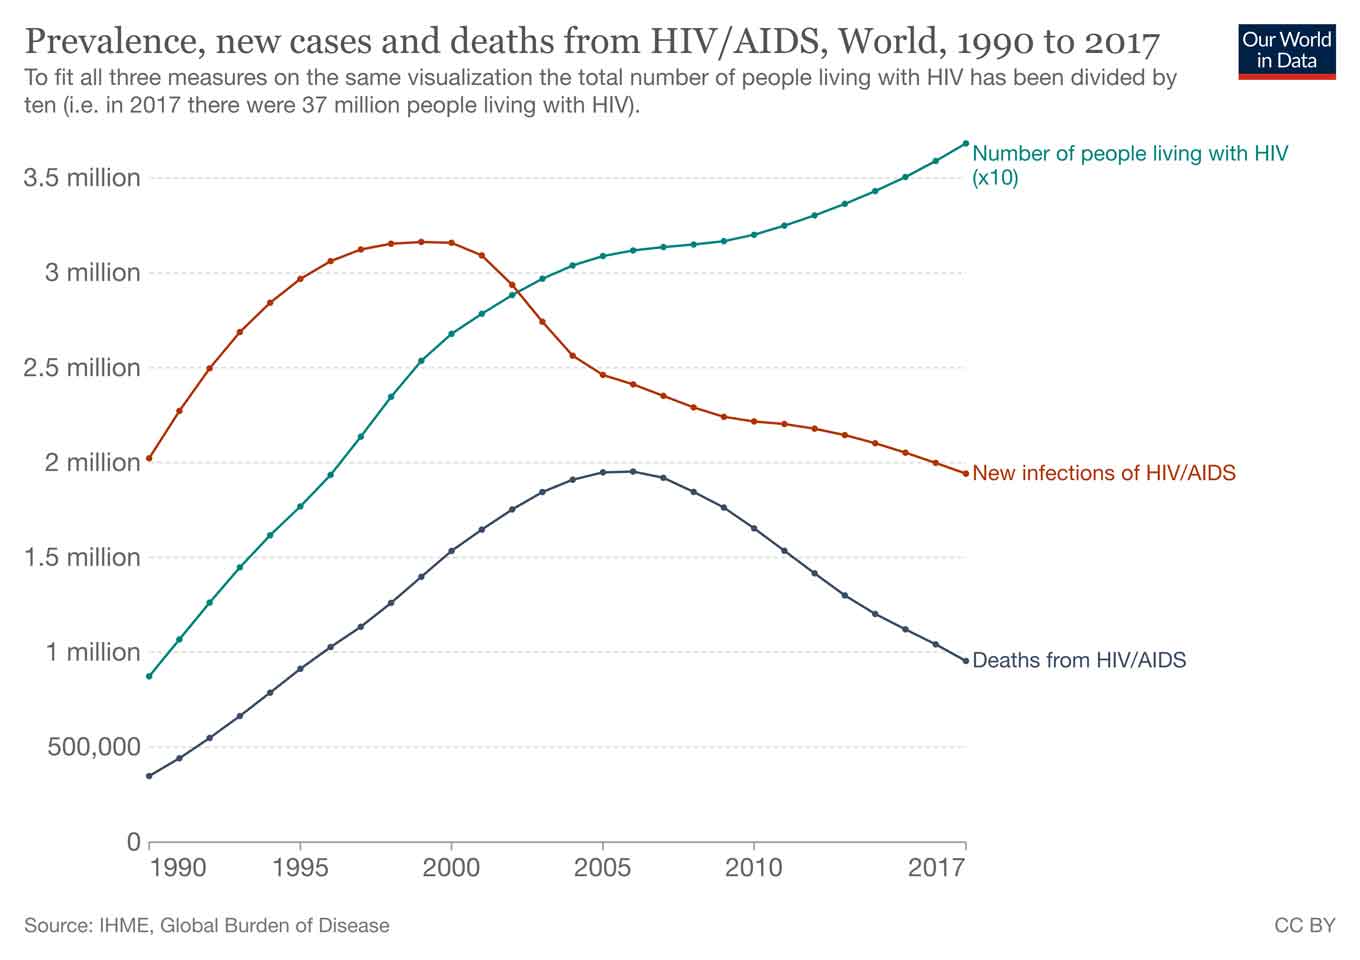 De jaren 1990 zagen een aanzienlijke toename van het aantal mensen besmet met HIV en sterven aan AIDS.  Tussen 1996 en 2001 raakten jaarlijks meer dan 3 miljoen mensen besmet met hiv. Sindsdien begon het aantal nieuwe besmettingen af te nemen en in 2017 werd het teruggebracht tot onder de 2 miljoen. Het laagste aantal nieuwe besmettingen sinds 1990.  Het aantal aids-gerelateerde sterfgevallen steeg gedurende de jaren 1990 en bereikte een piek in 2005, 2006 toen in beide jaren bijna 2 miljoen mensen stierven. Sindsdien is ook het jaarlijkse aantal sterfgevallen door aids gedaald en sindsdien gehalveerd. 2017 was het eerste jaar sinds de piek waarin minder dan 1 miljoen mensen stierven aan aids.  De grafiek toont ook de voortdurende toename van het aantal mensen met hiv. Het tempo van de toename is vertraagd in vergelijking met de jaren 1990, maar het absolute aantal is op het hoogste ooit met meer dan 36 miljoen mensen wereldwijd die leven met HIV.